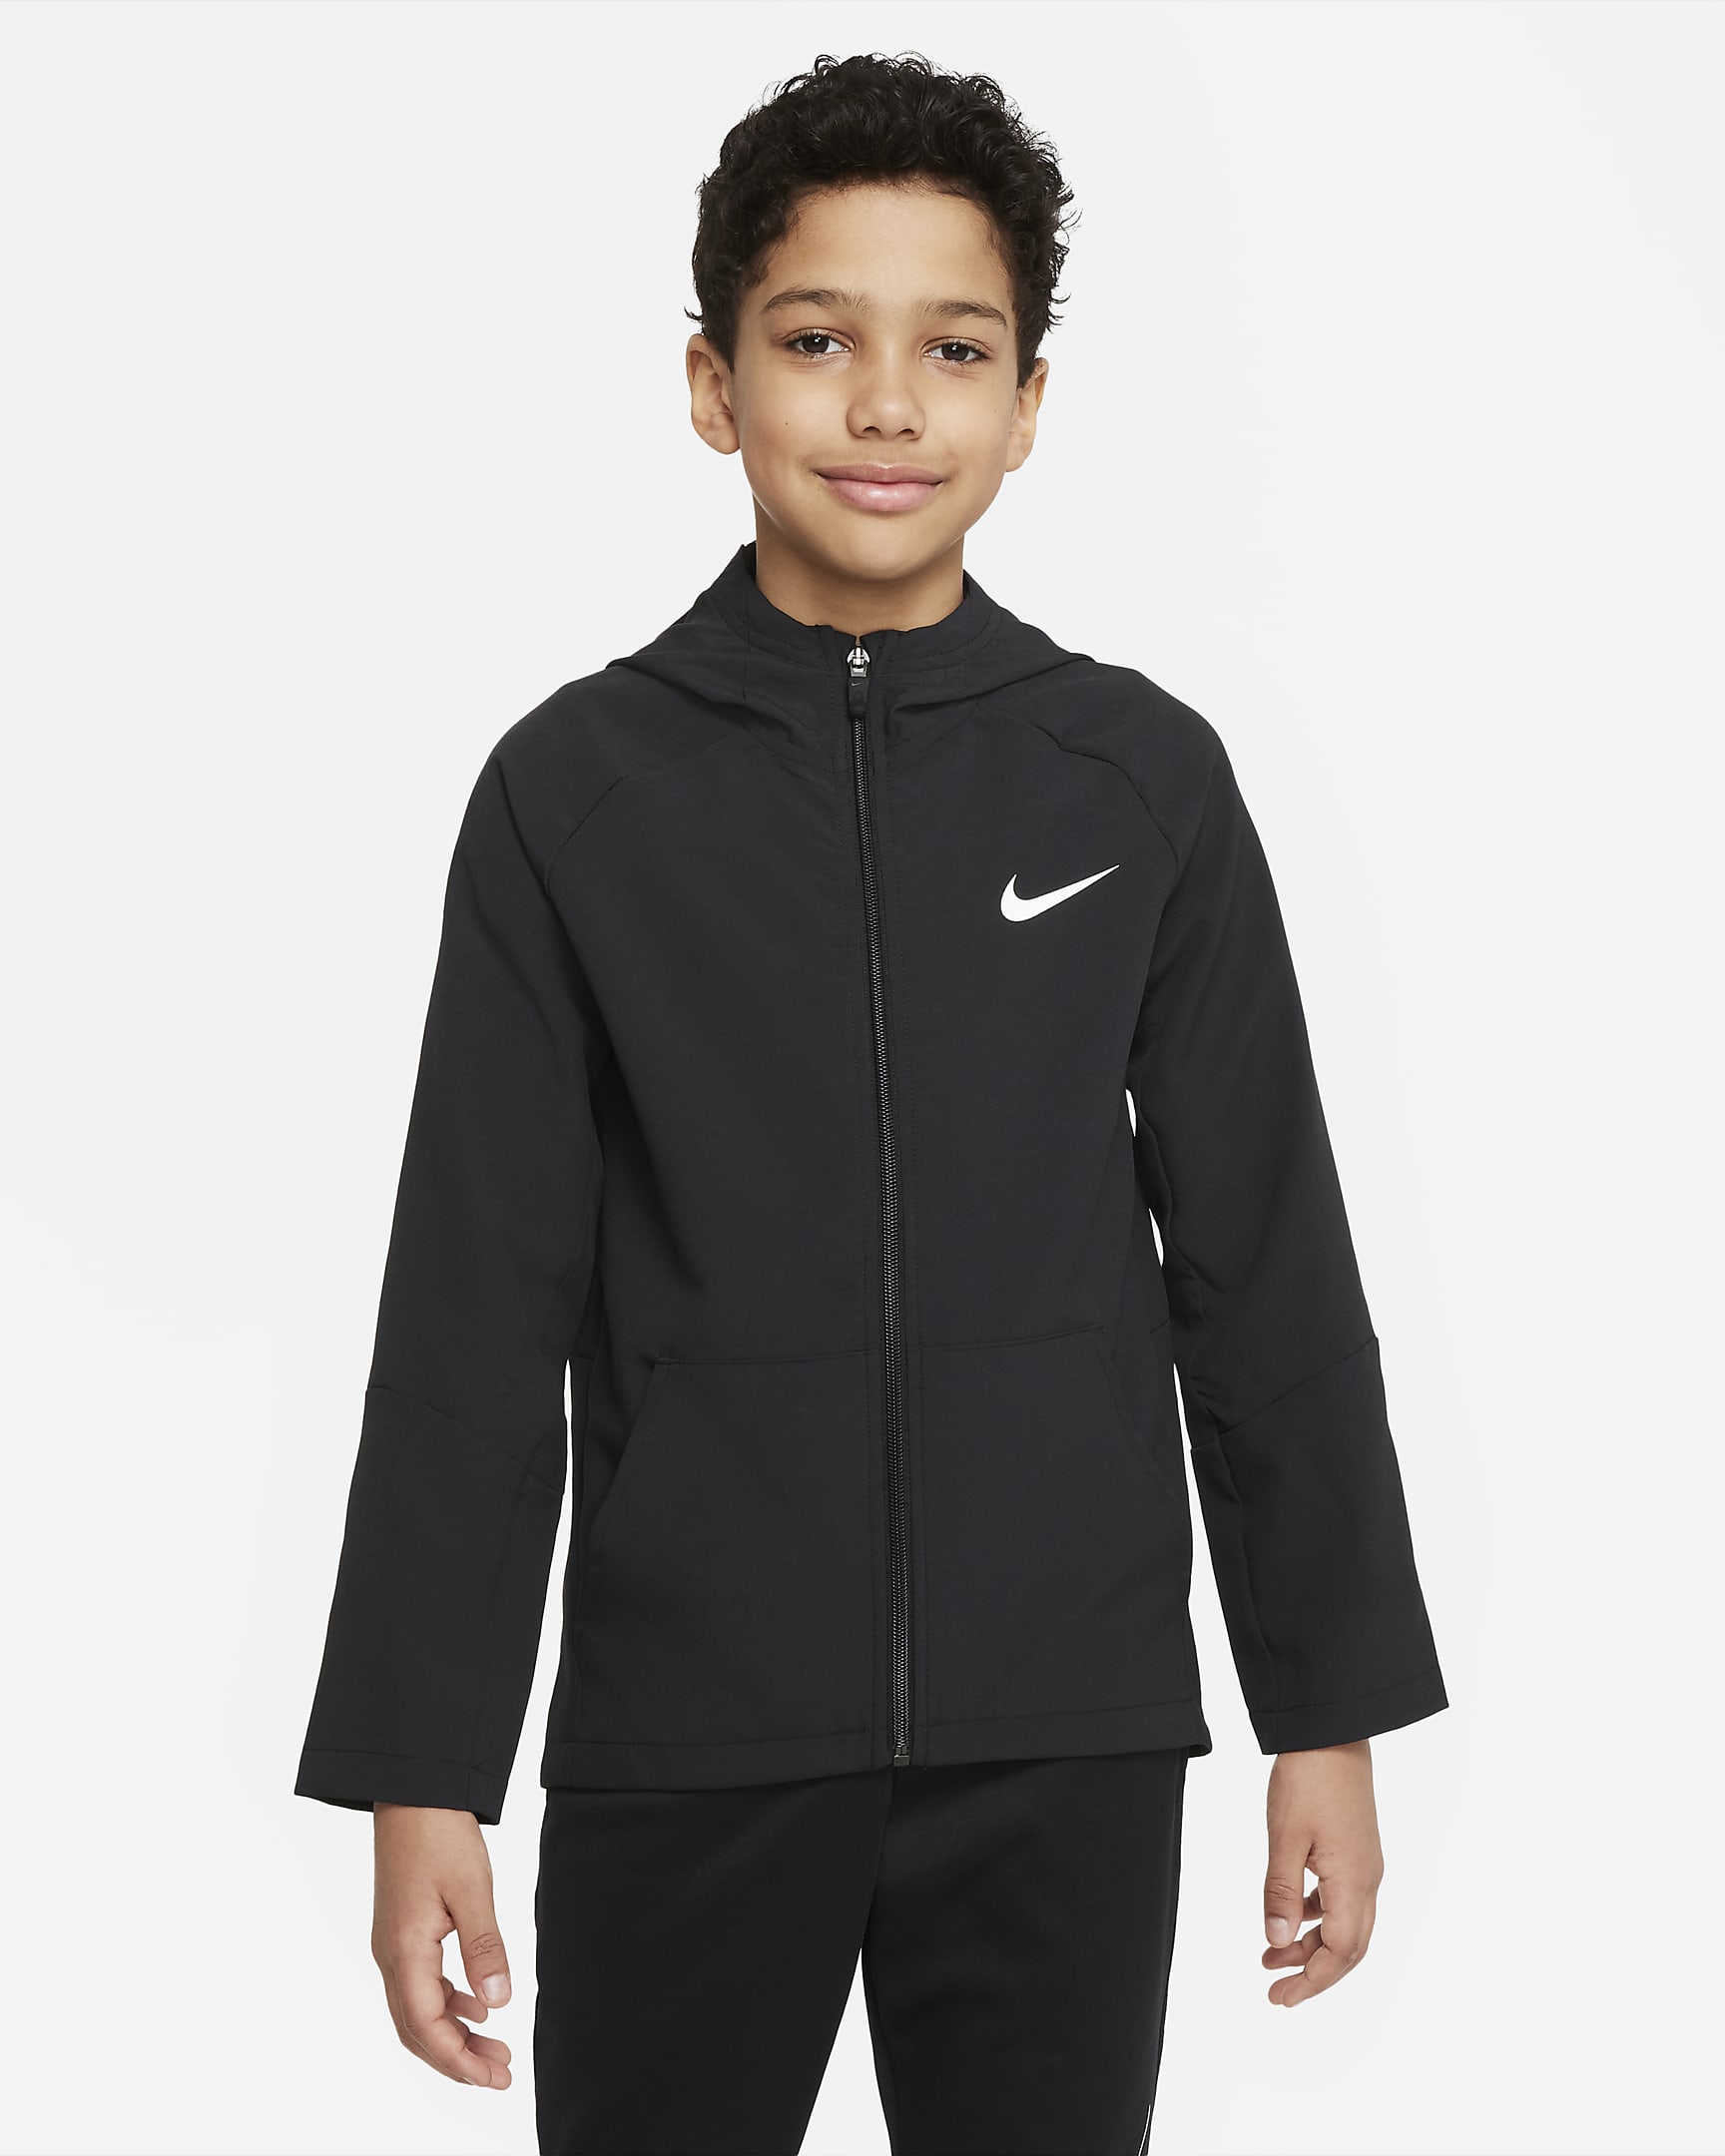 Nike Dri-FIT Older Kids' (Boys') Woven Training Jacket - Black/Black/Black/White